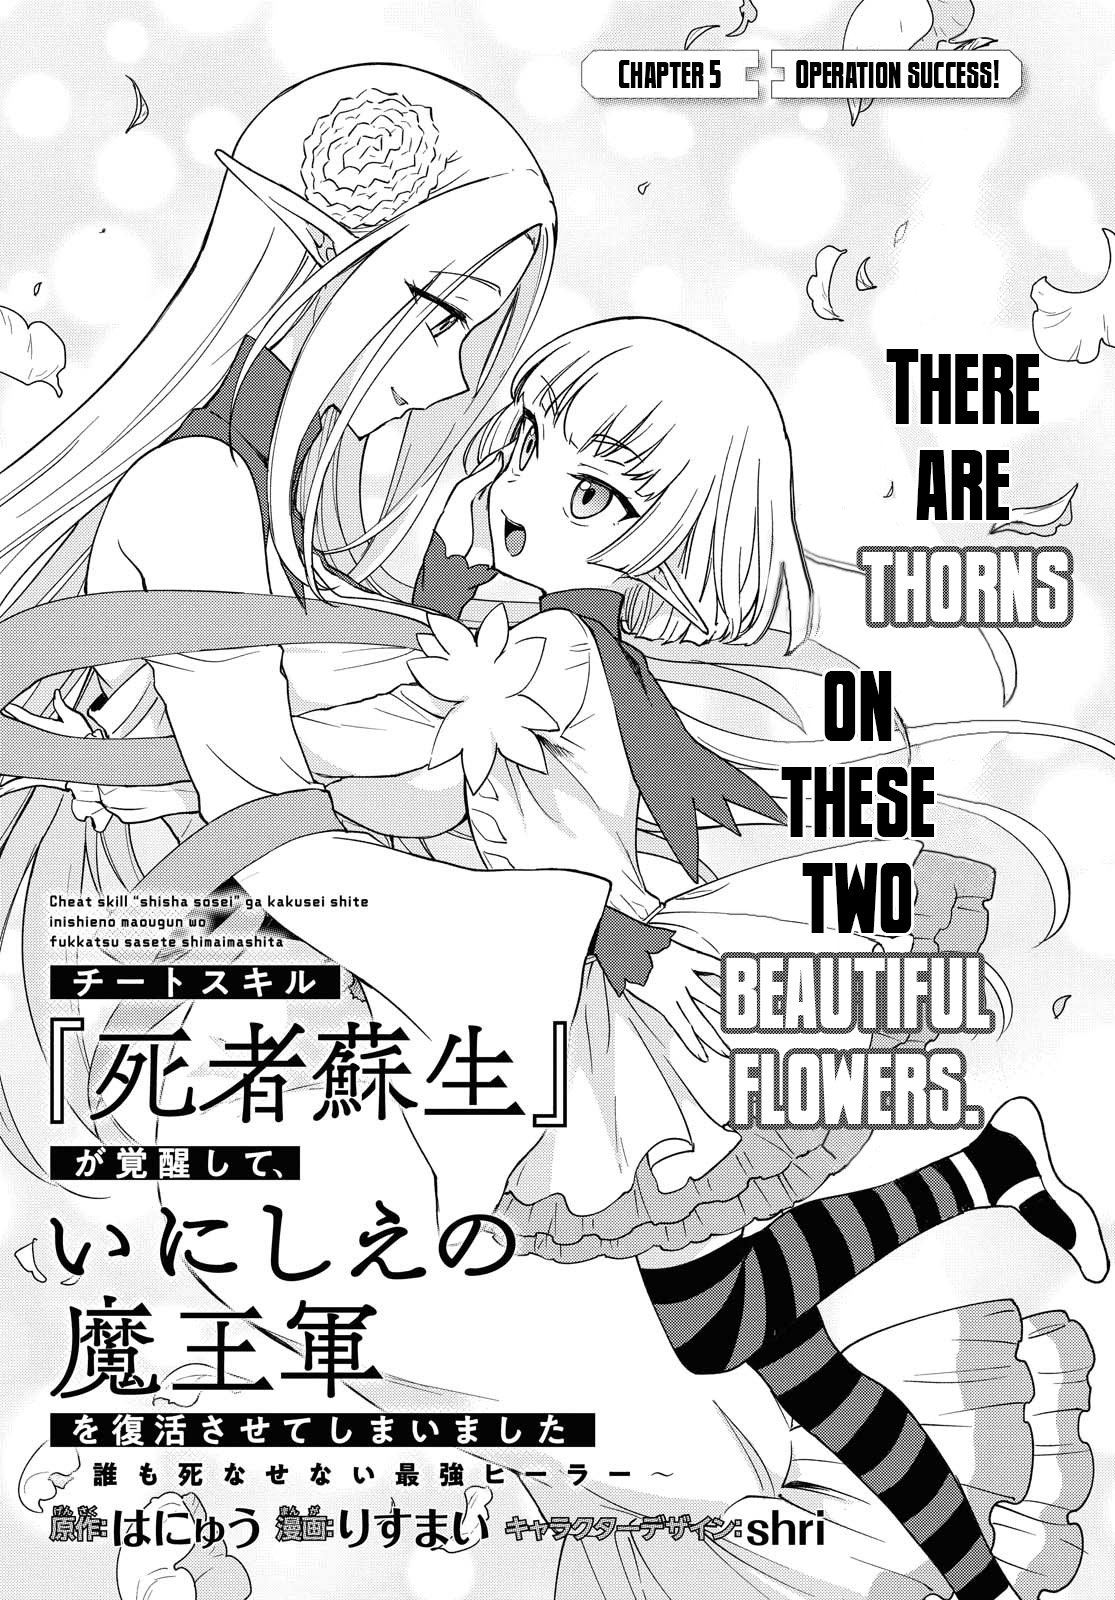 Manga Like Cheat Skill Shisha Sosei ga Kakusei Shite, Inishie no